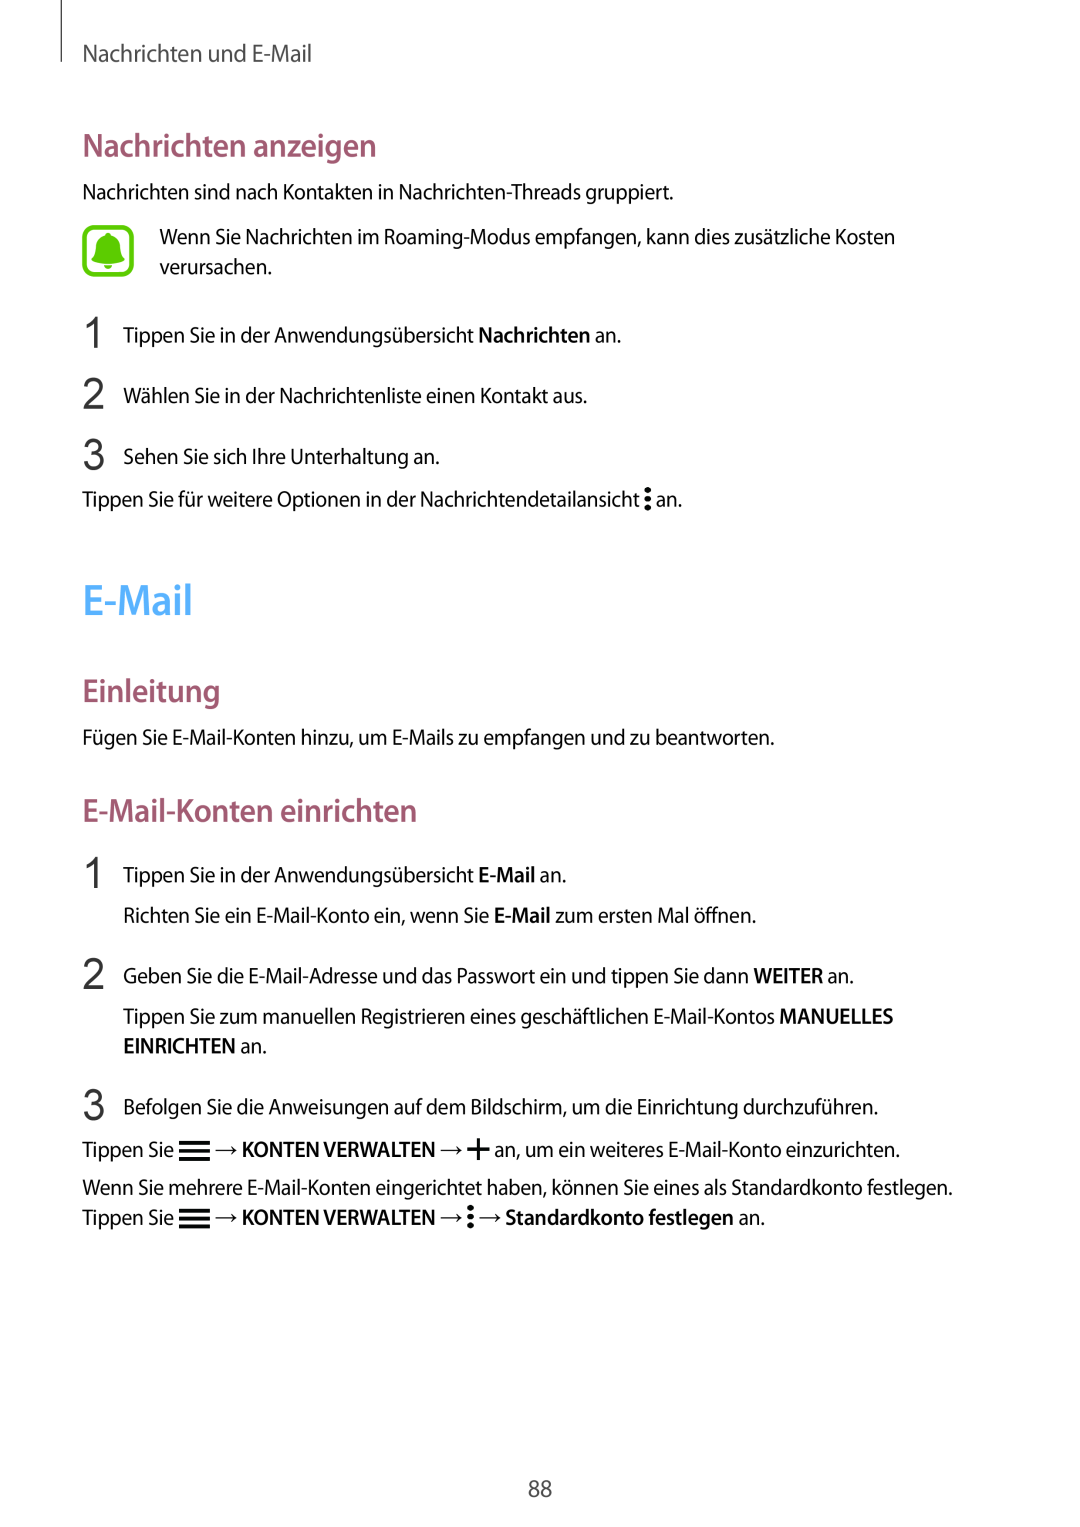 Samsung SM-N910FZDEATO manual Nachrichten anzeigen, E-Mail-Konten einrichten, Nachrichten und E-Mail, EINRICHTEN an 